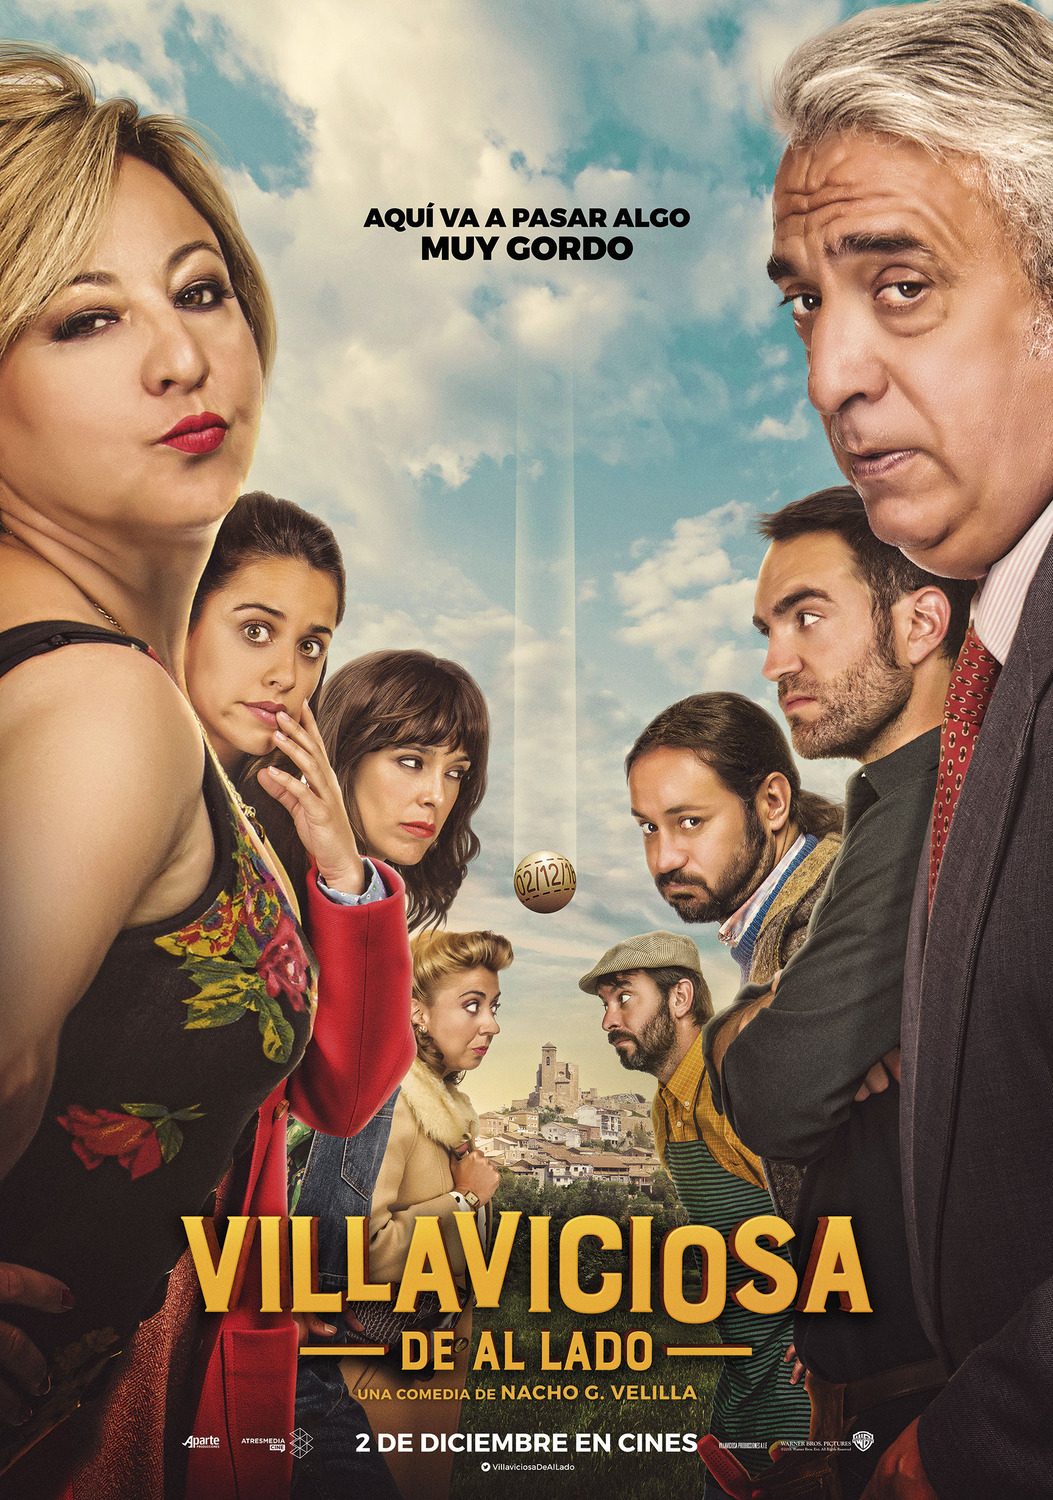 Extra Large Movie Poster Image for Villaviciosa de al lado (#1 of 8)